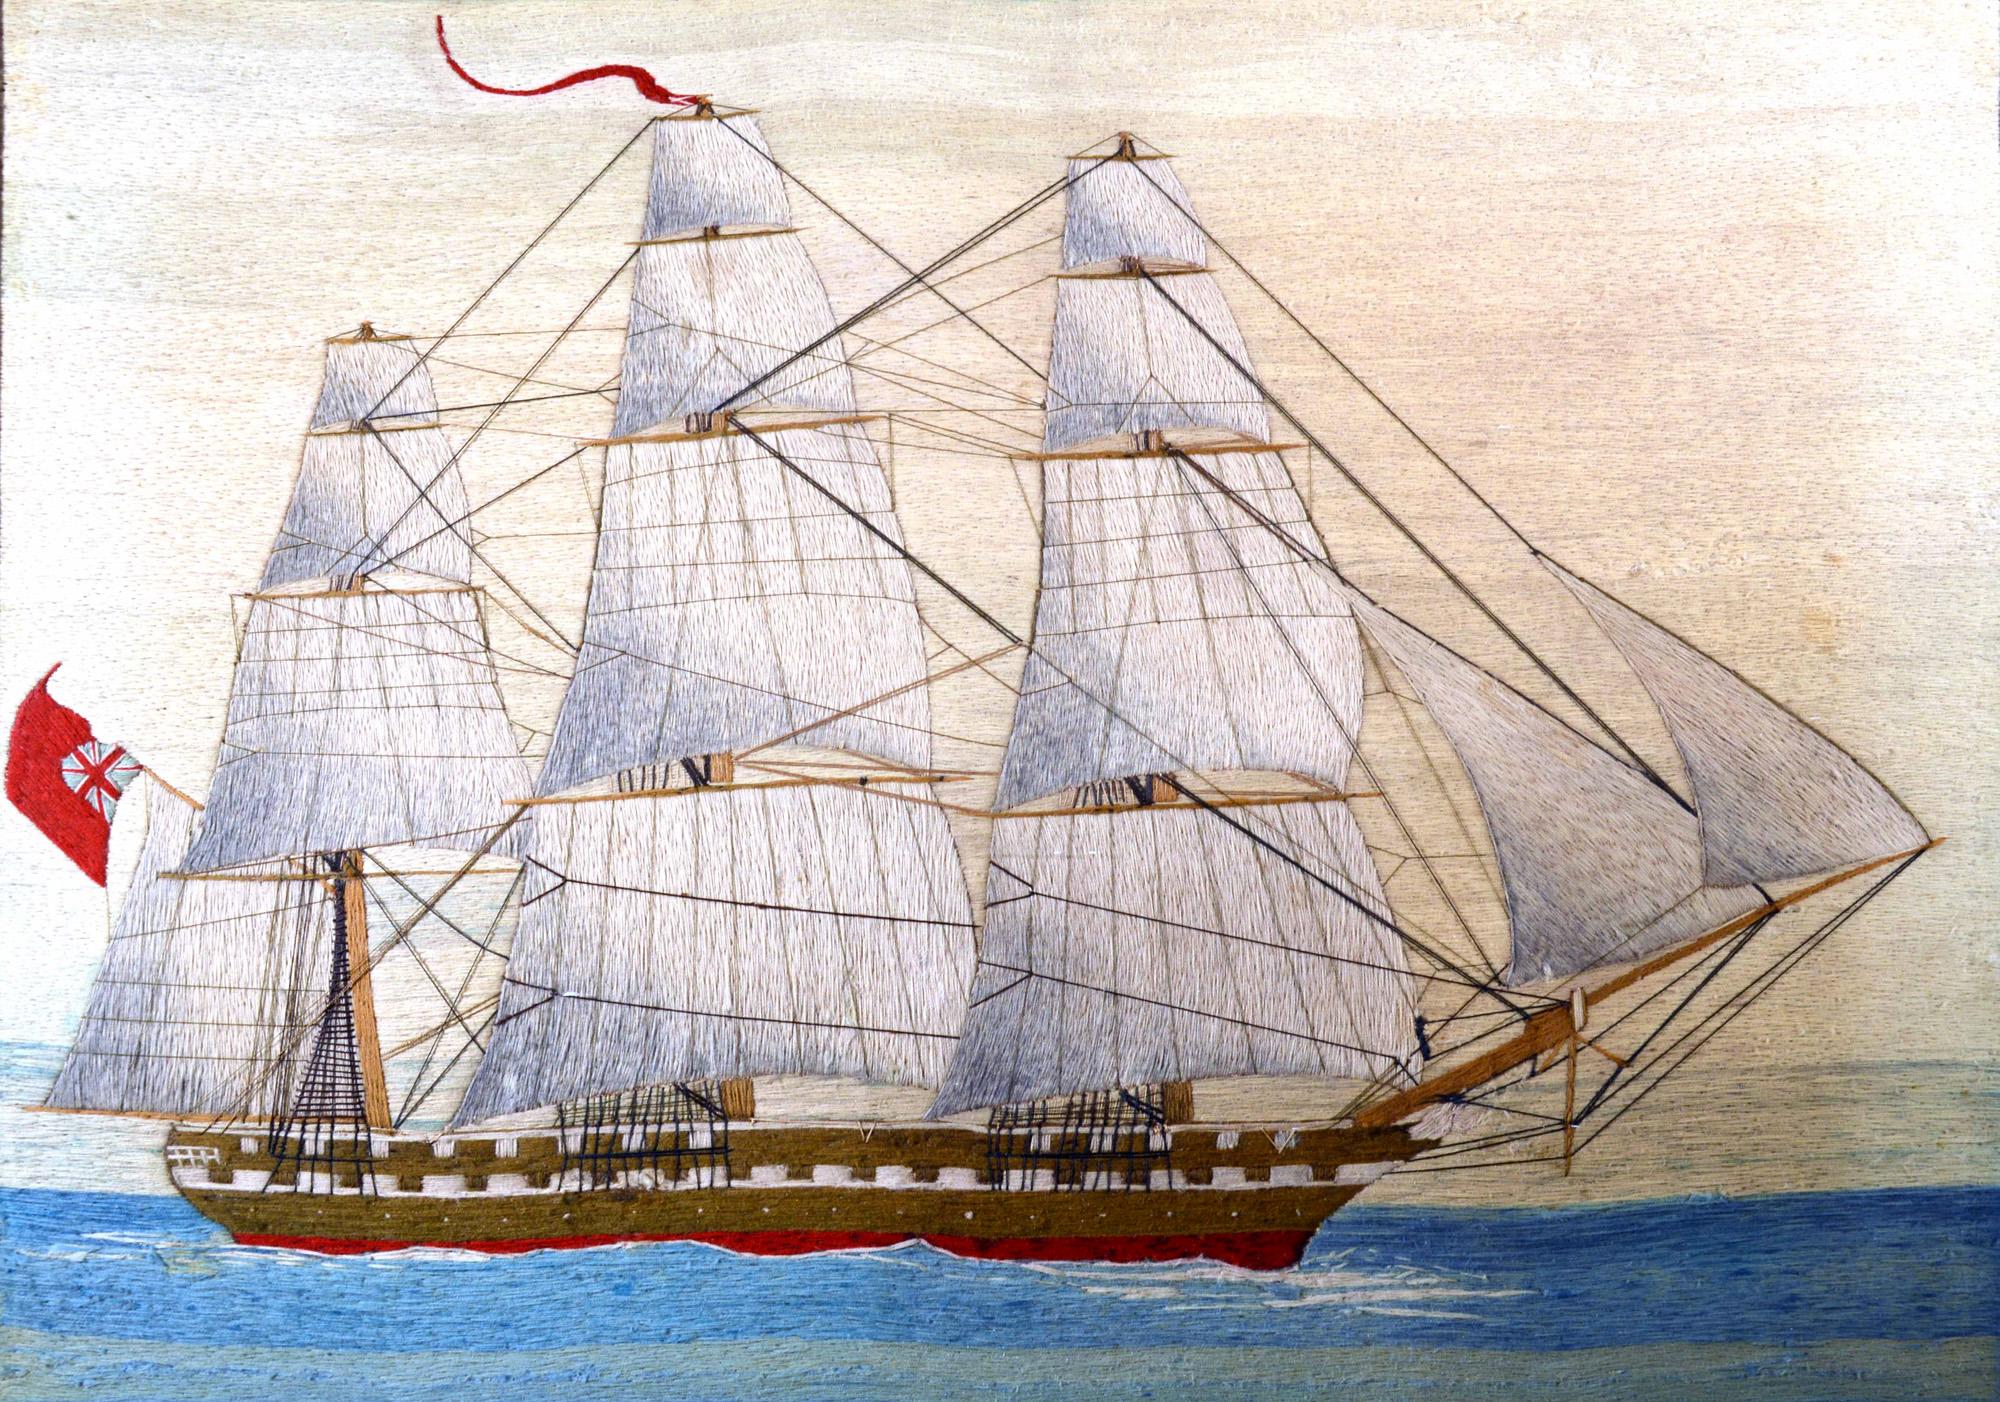 Großes britisches Seemannswollbild eines Schiffes der königlichen Marine unter vollen Segeln,
um 1875
(Ref: 9503-irim)

Die Seemannswolle oder Wollarbeit zeigt die Steuerbordseite eines dreimastigen Rahsegelschiffs der Royal Navy unter vollen